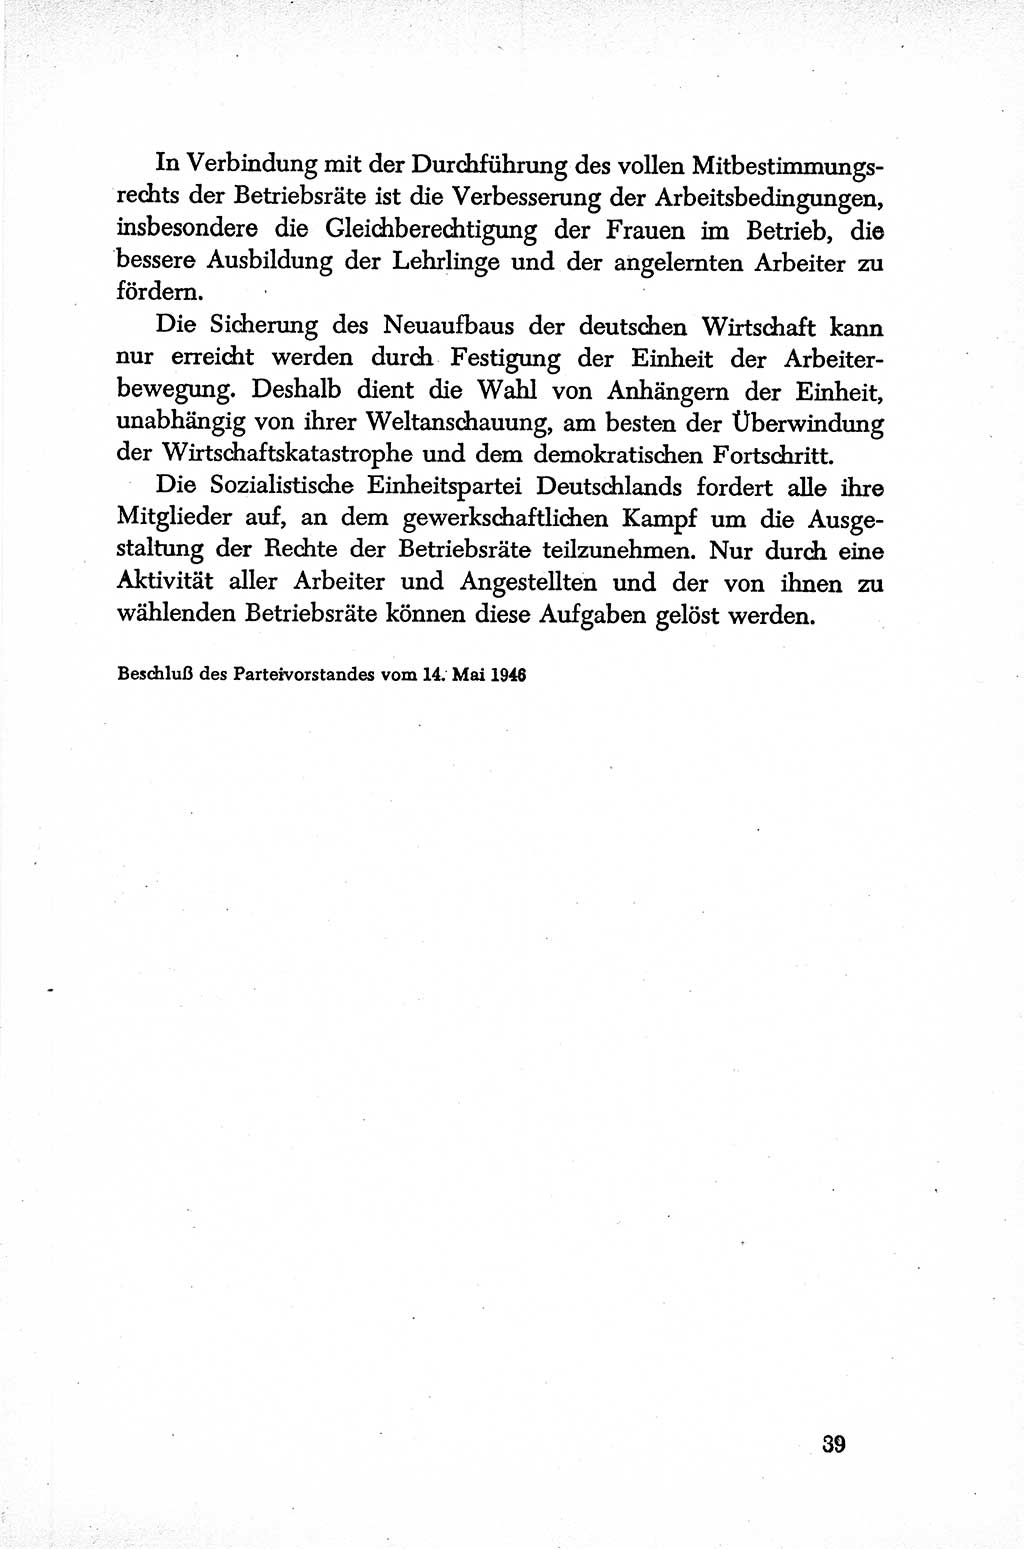 Dokumente der Sozialistischen Einheitspartei Deutschlands (SED) [Sowjetische Besatzungszone (SBZ) Deutschlands] 1946-1948, Seite 39 (Dok. SED SBZ Dtl. 1946-1948, S. 39)